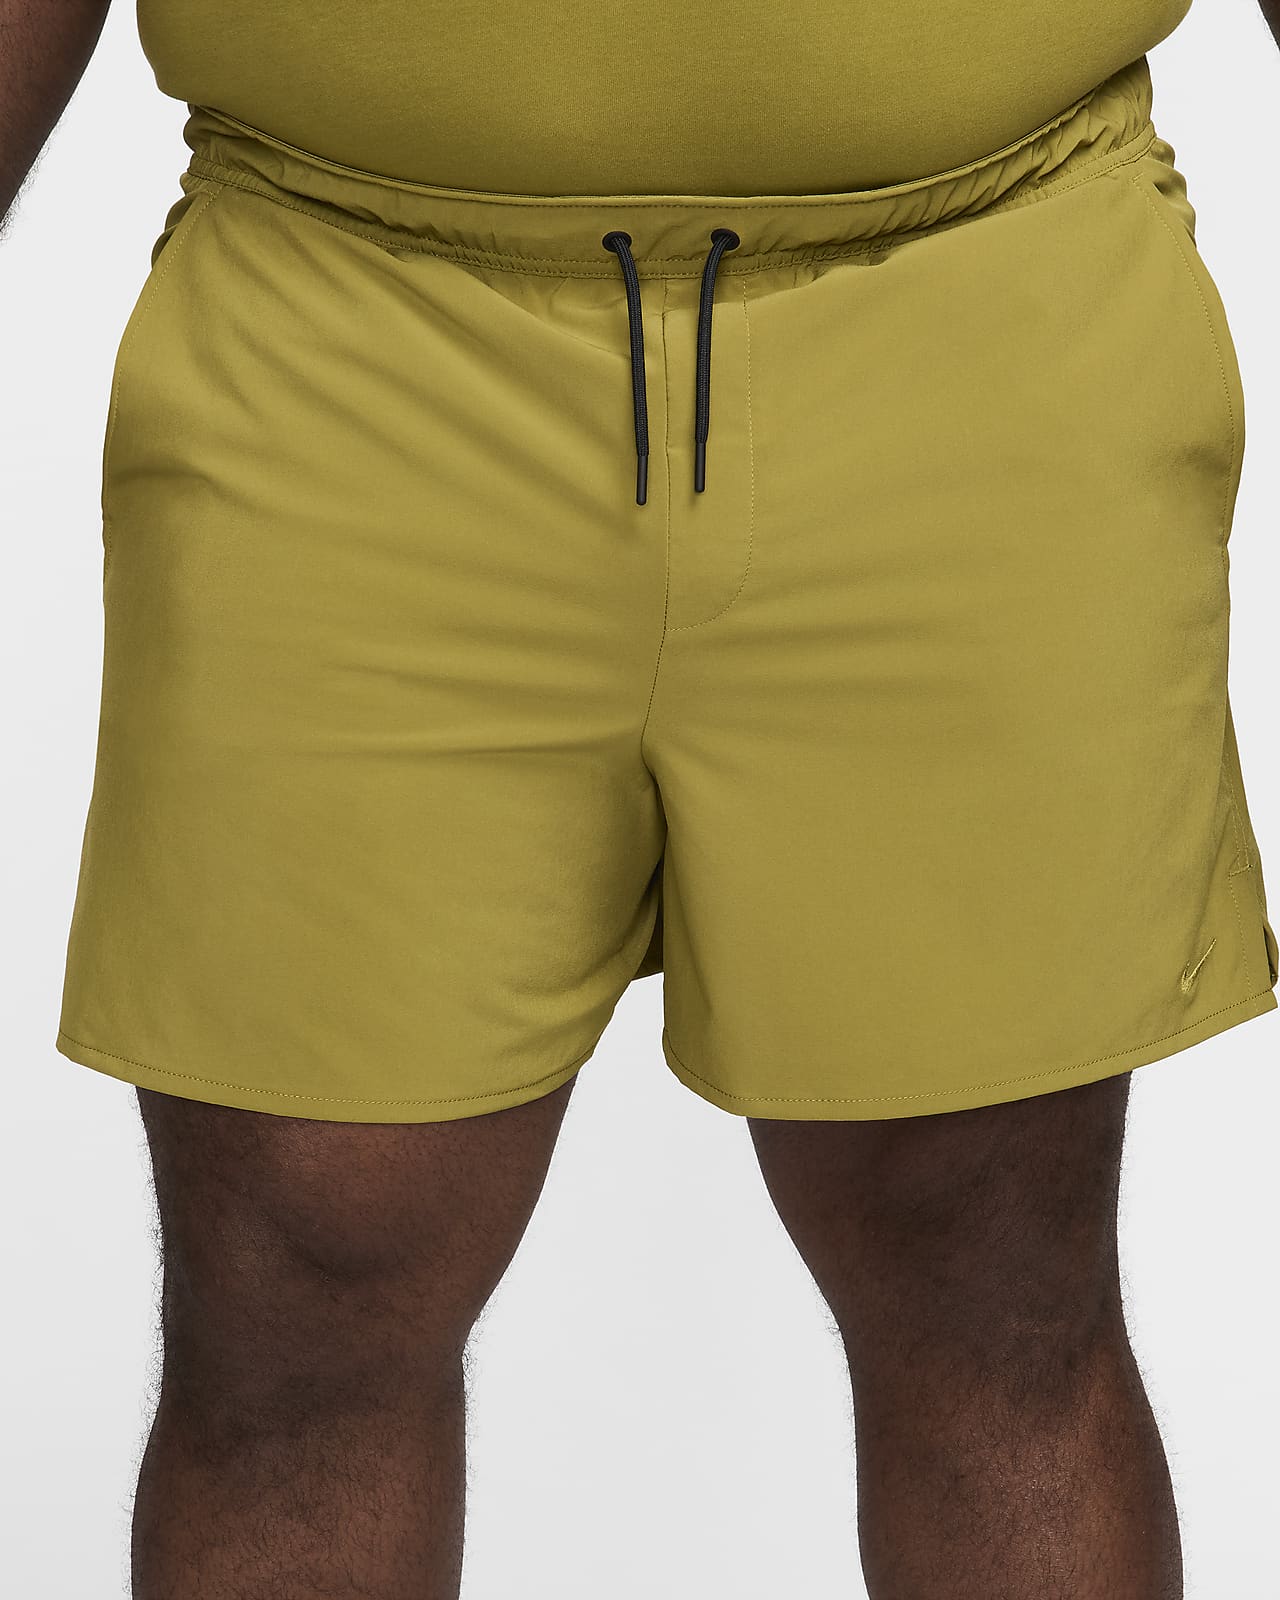 Nike Unlimited Men's Dri-FIT 5 Unlined Versatile Shorts